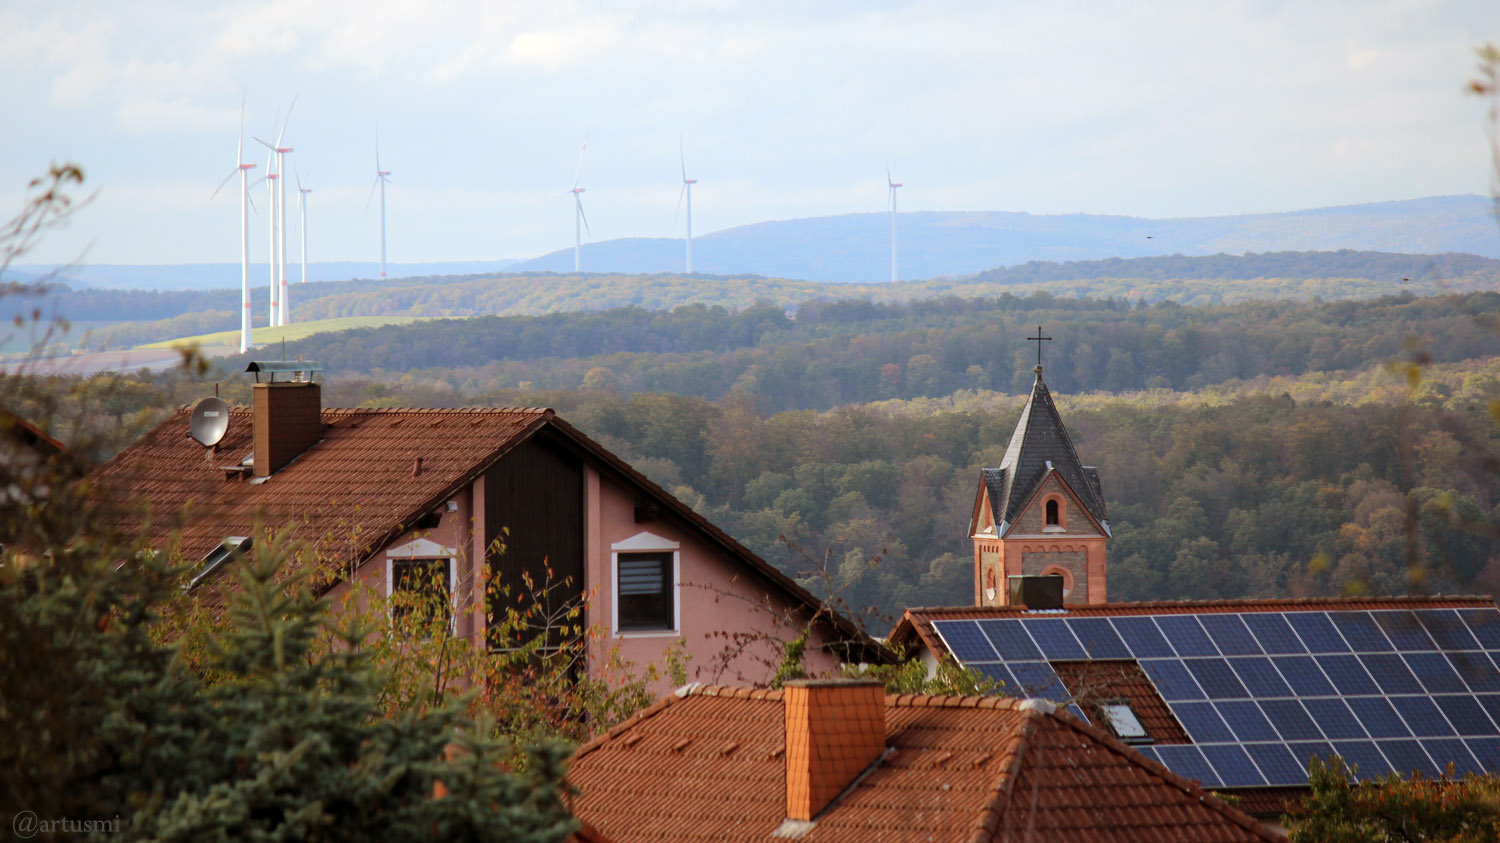 Blick von Eisingen auf die Windräder bei Helmstadt am 11. Oktober 2019